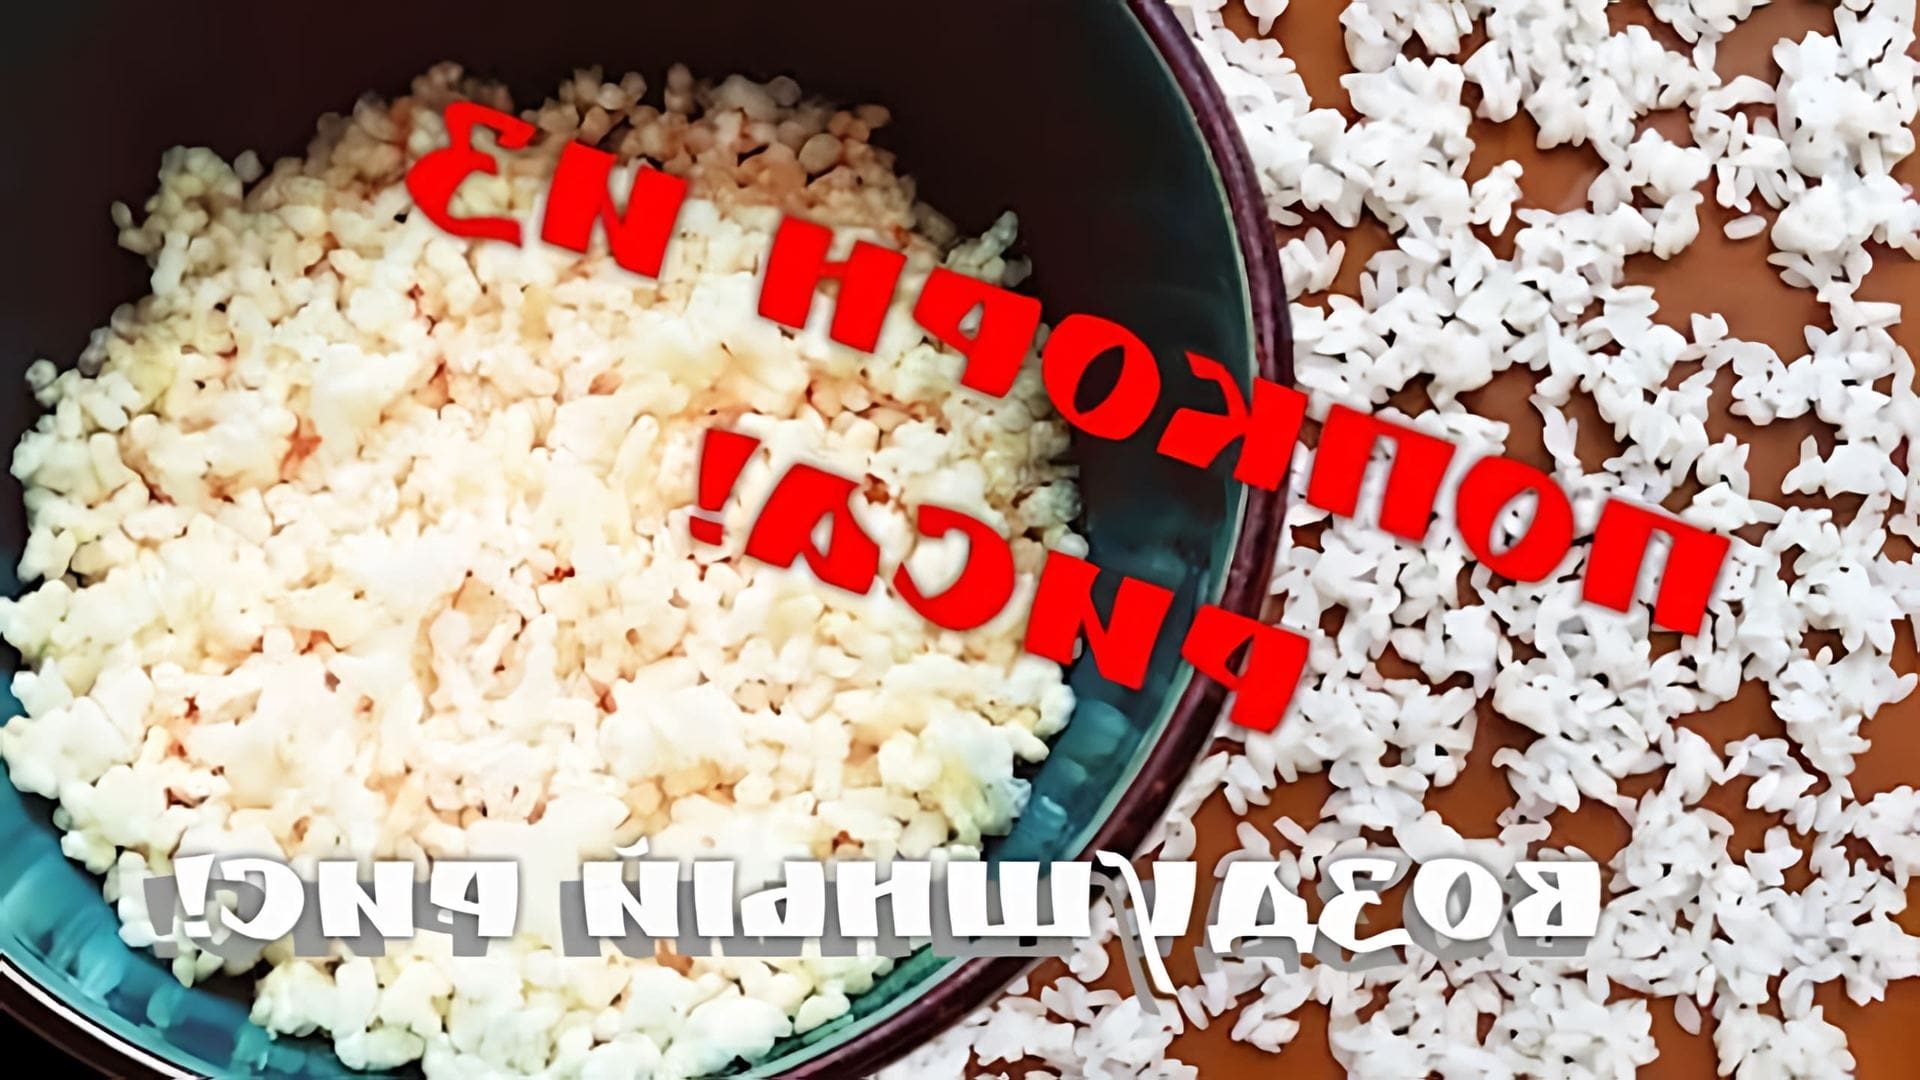 В данном видео демонстрируется процесс приготовления воздушного риса в домашних условиях